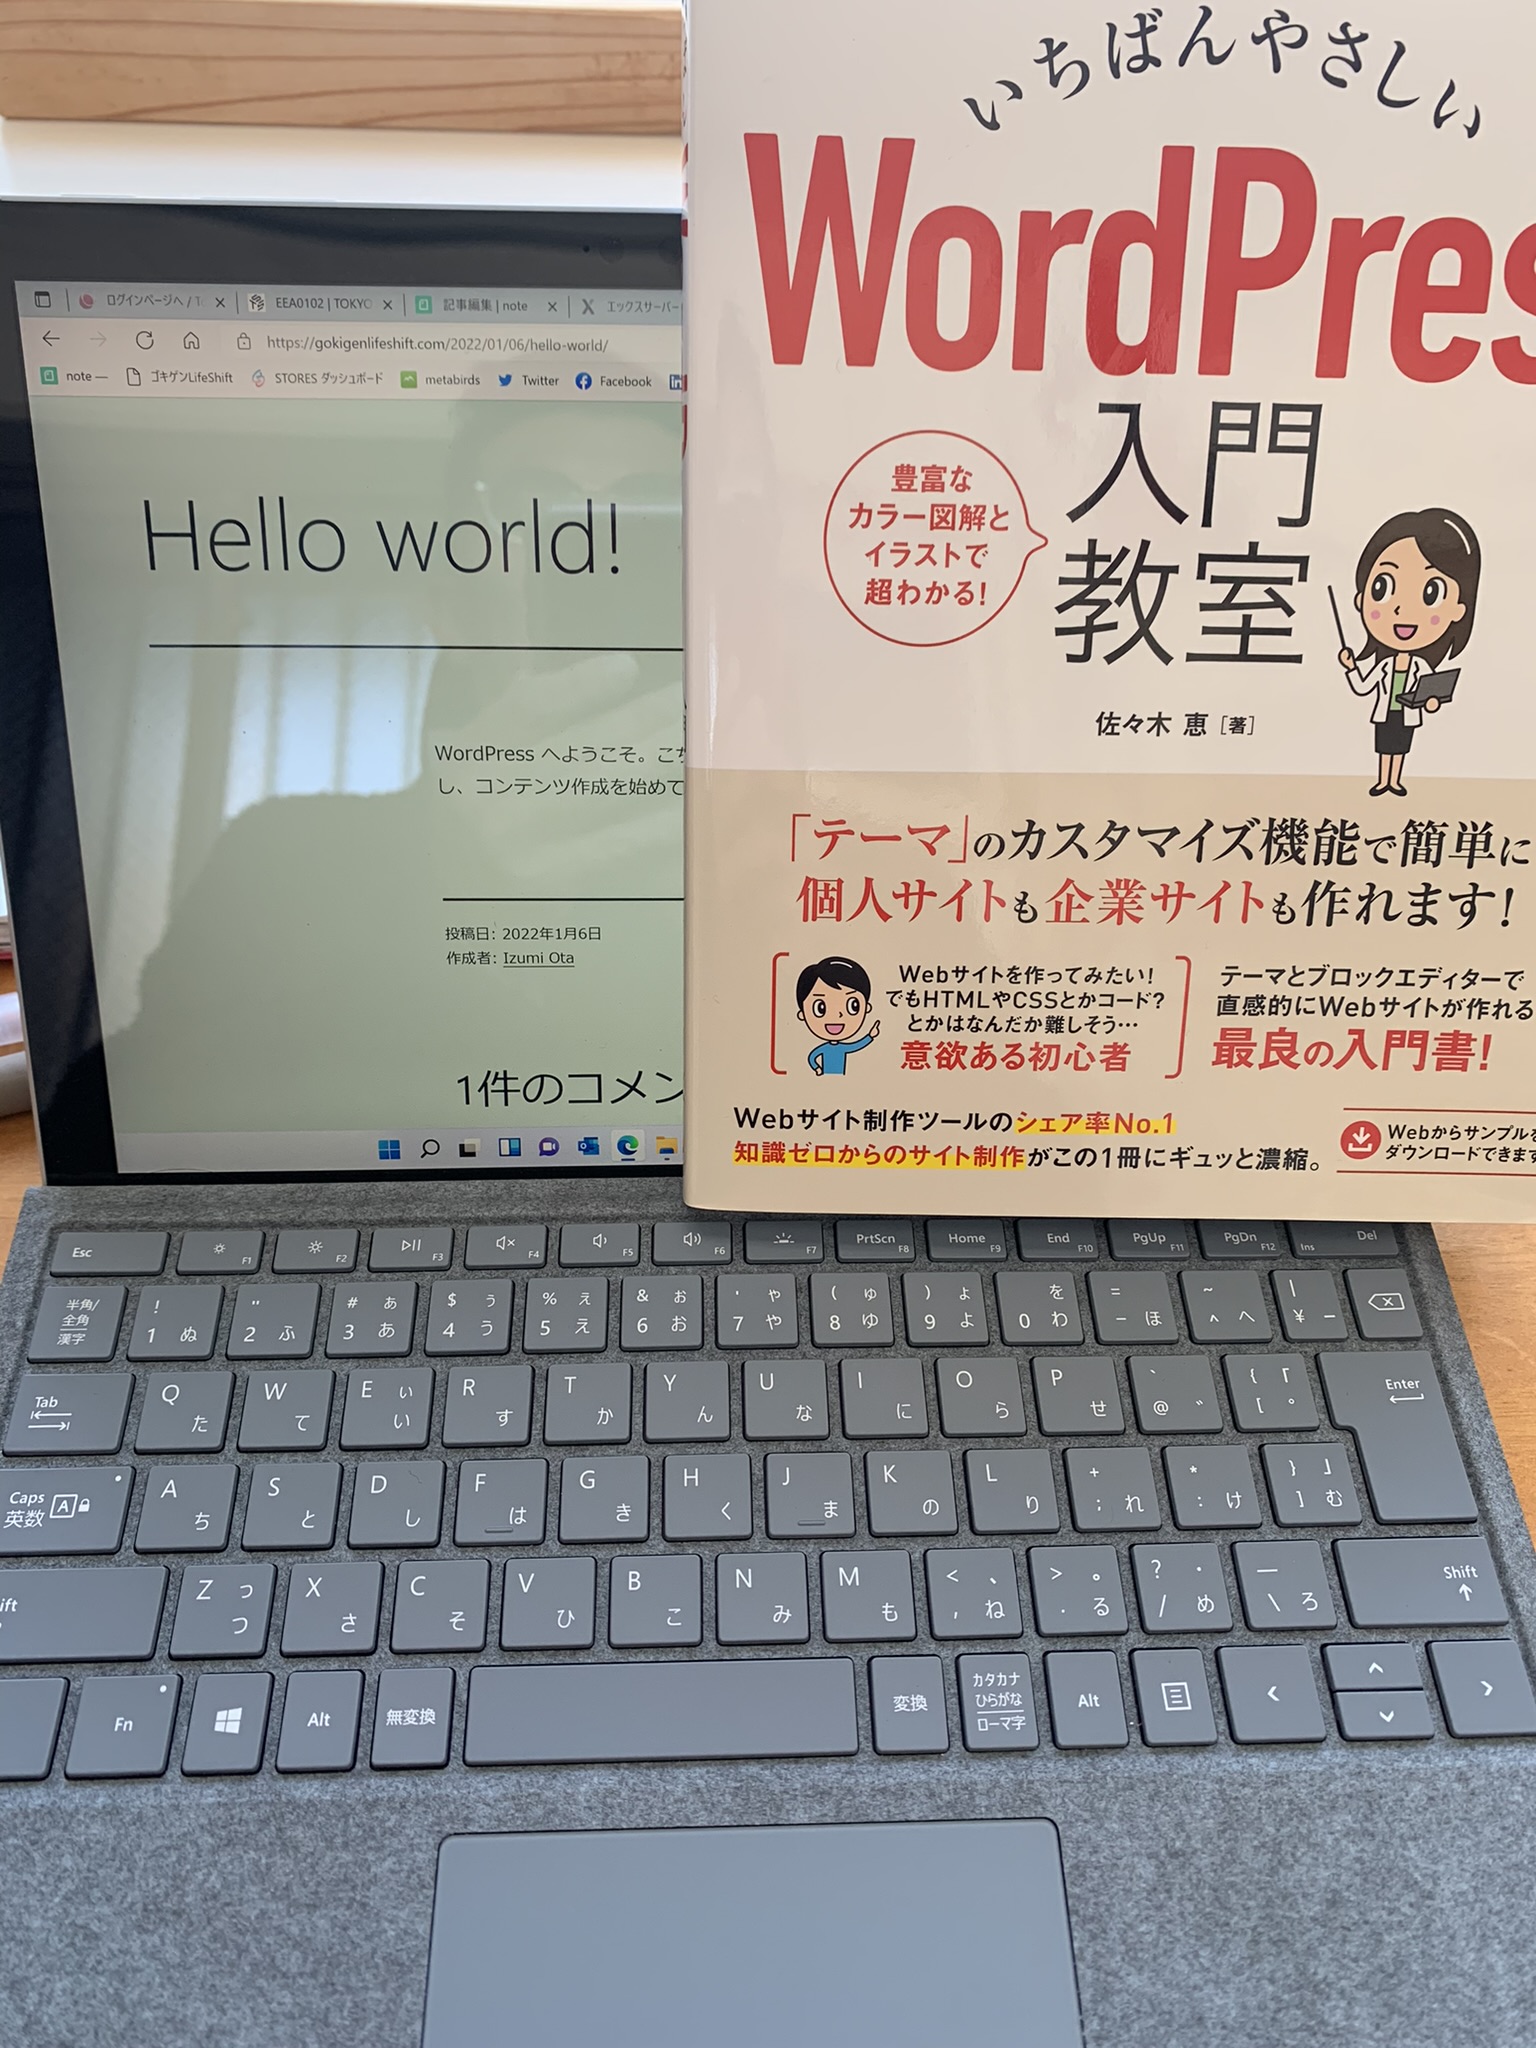 Hello world! WordPressでブログを始める